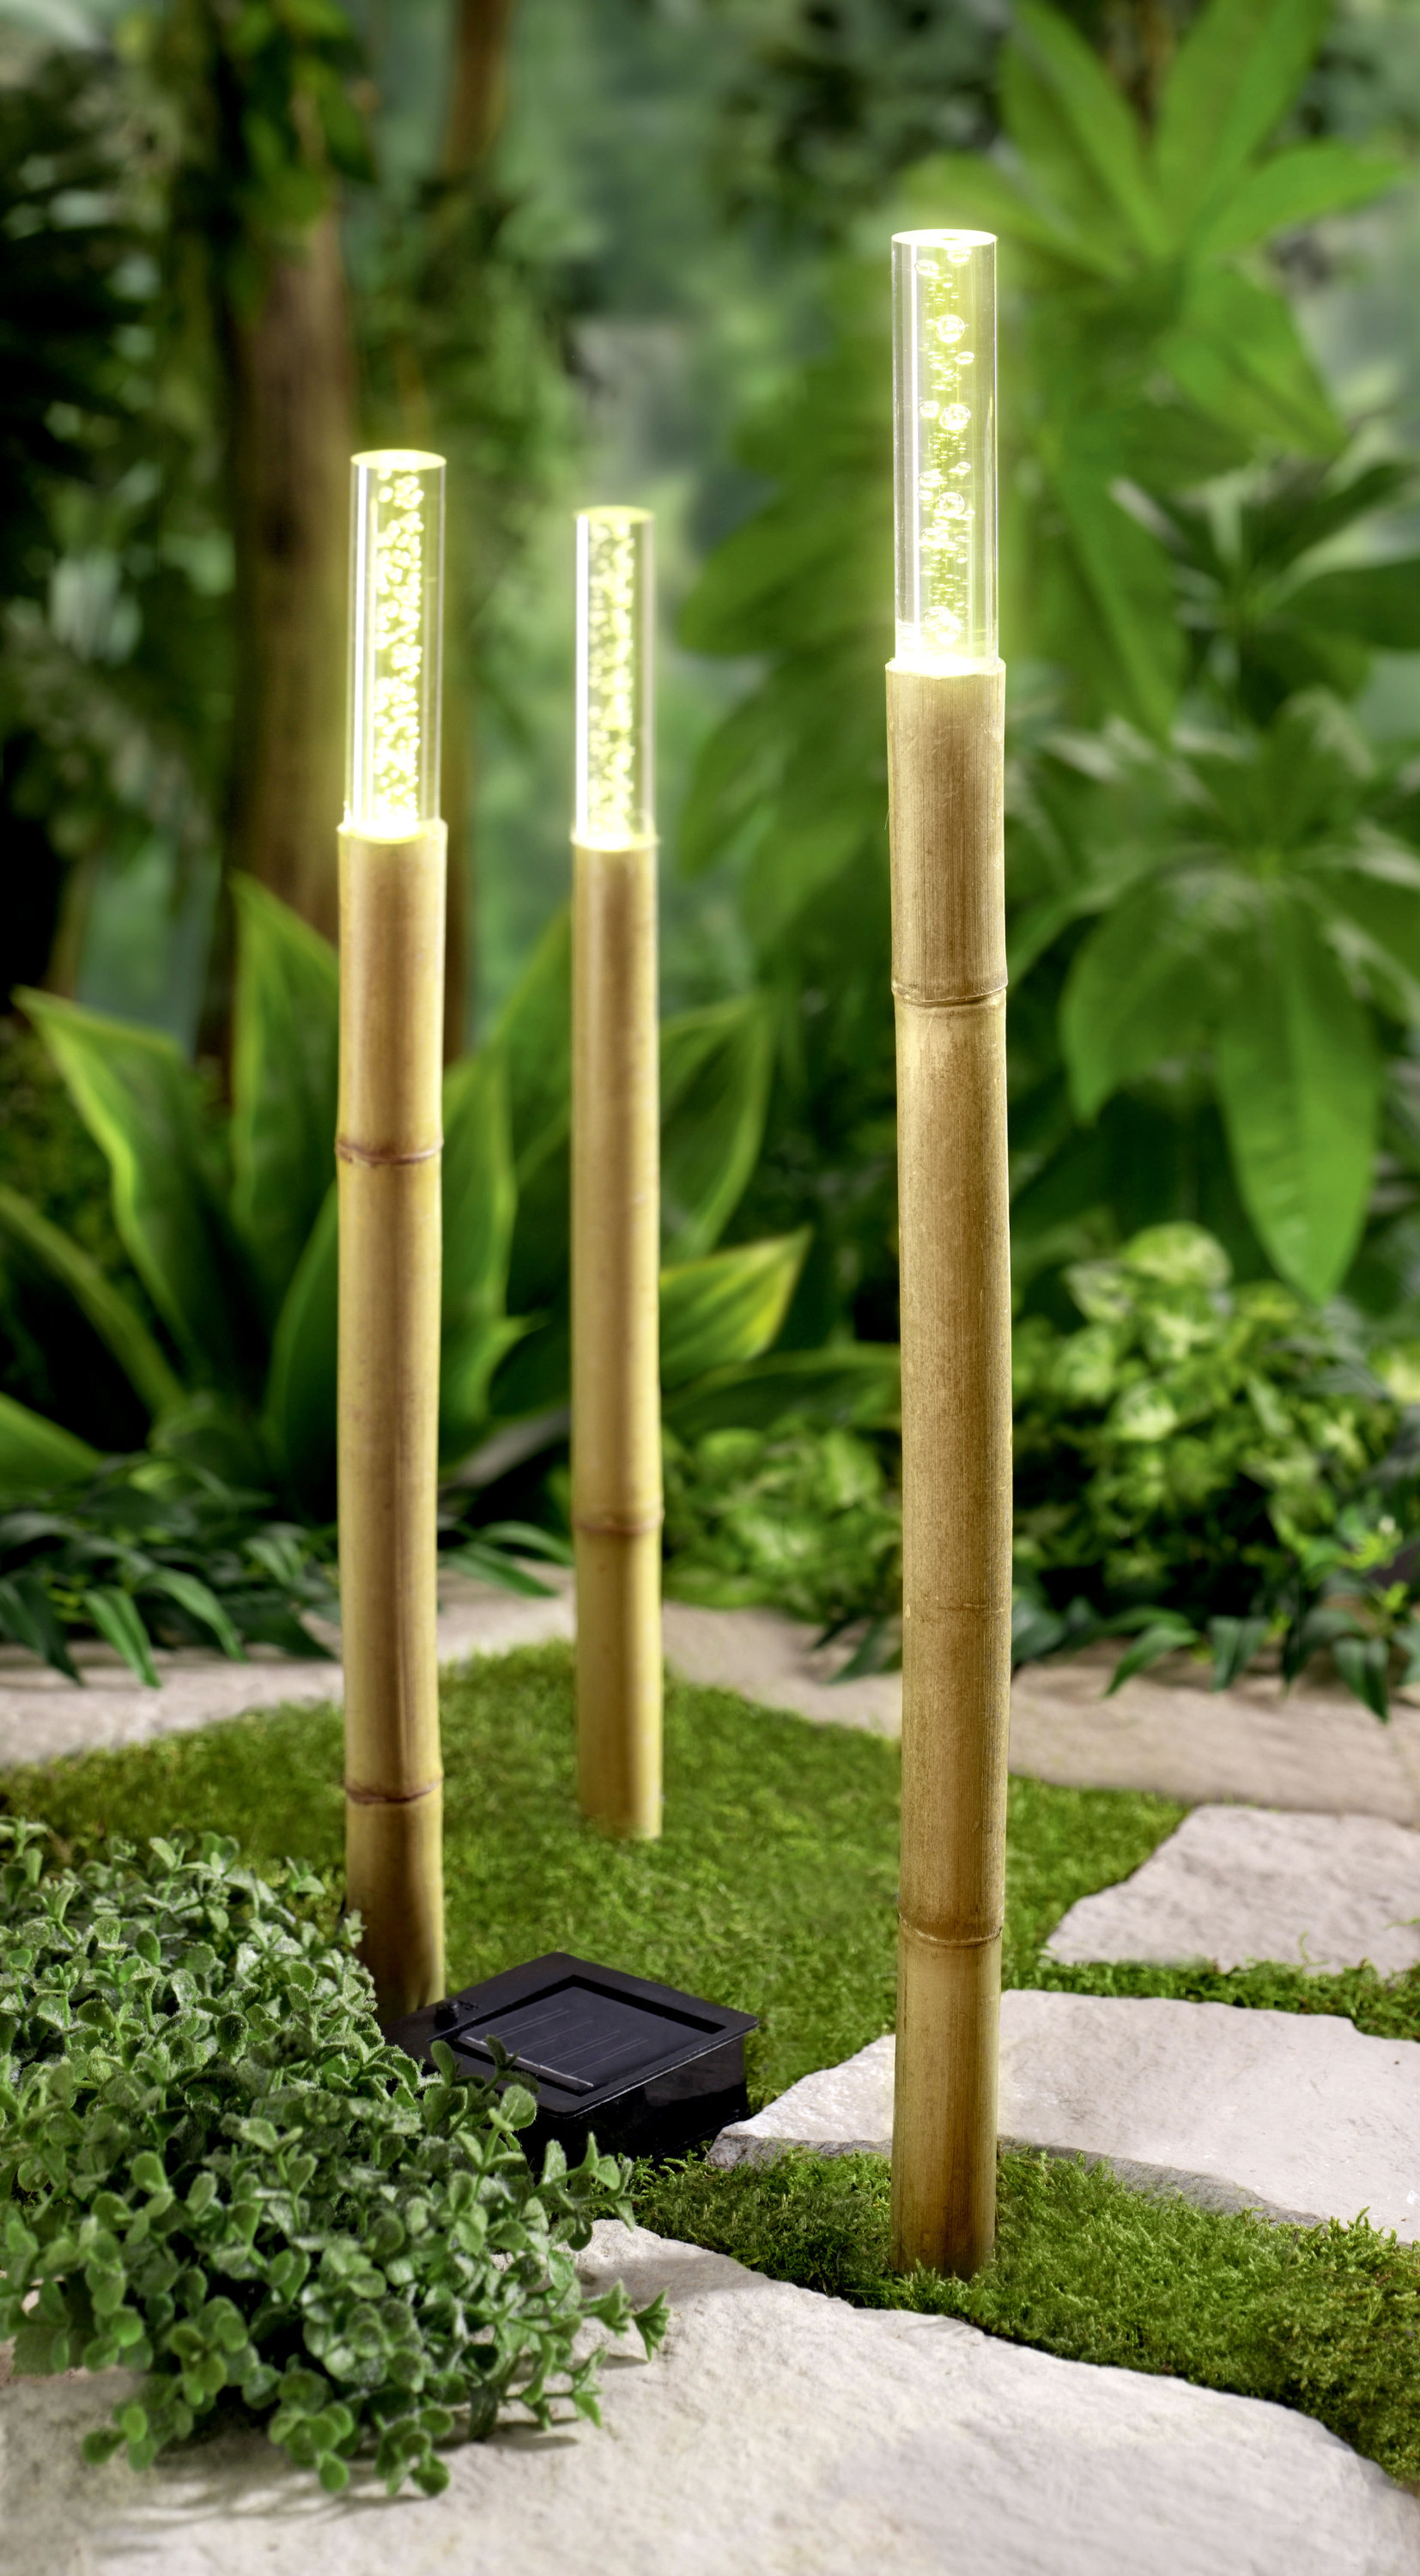 Lampe Aus Bambusrohr Bauen – Caseconrad.com